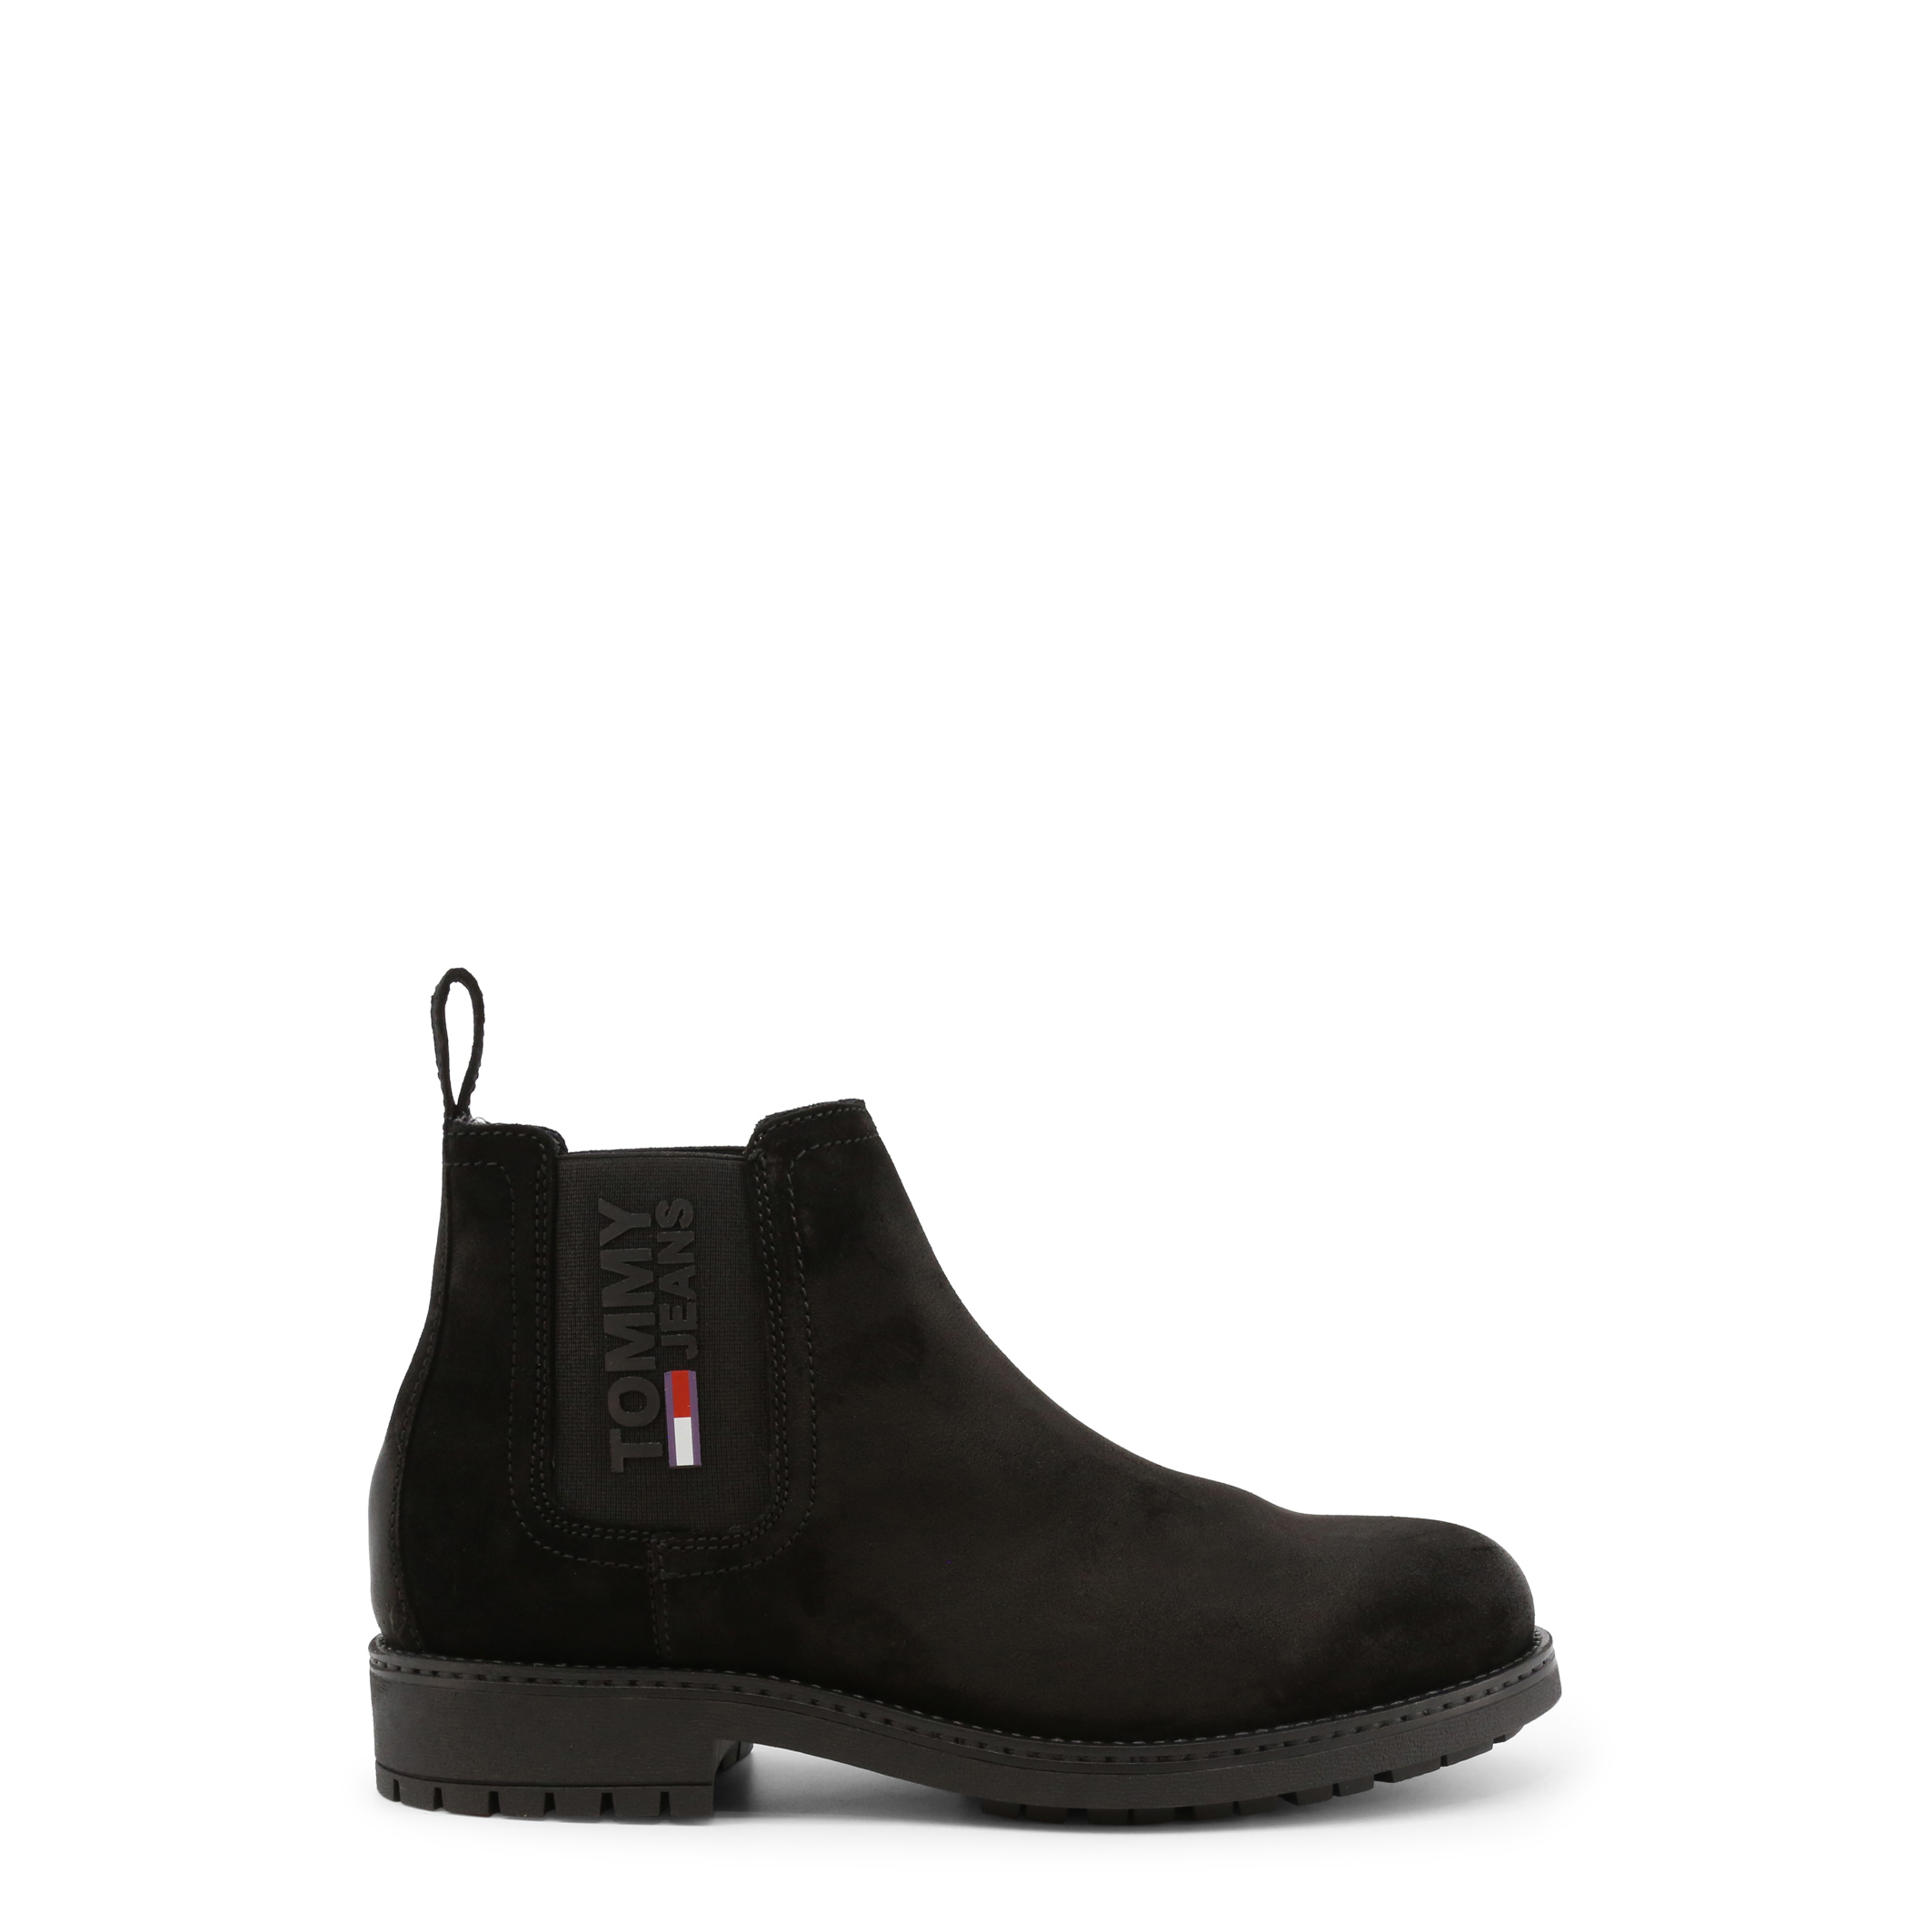 Tommy Hilfiger Black Ankle boots for Men - EM0EM00826